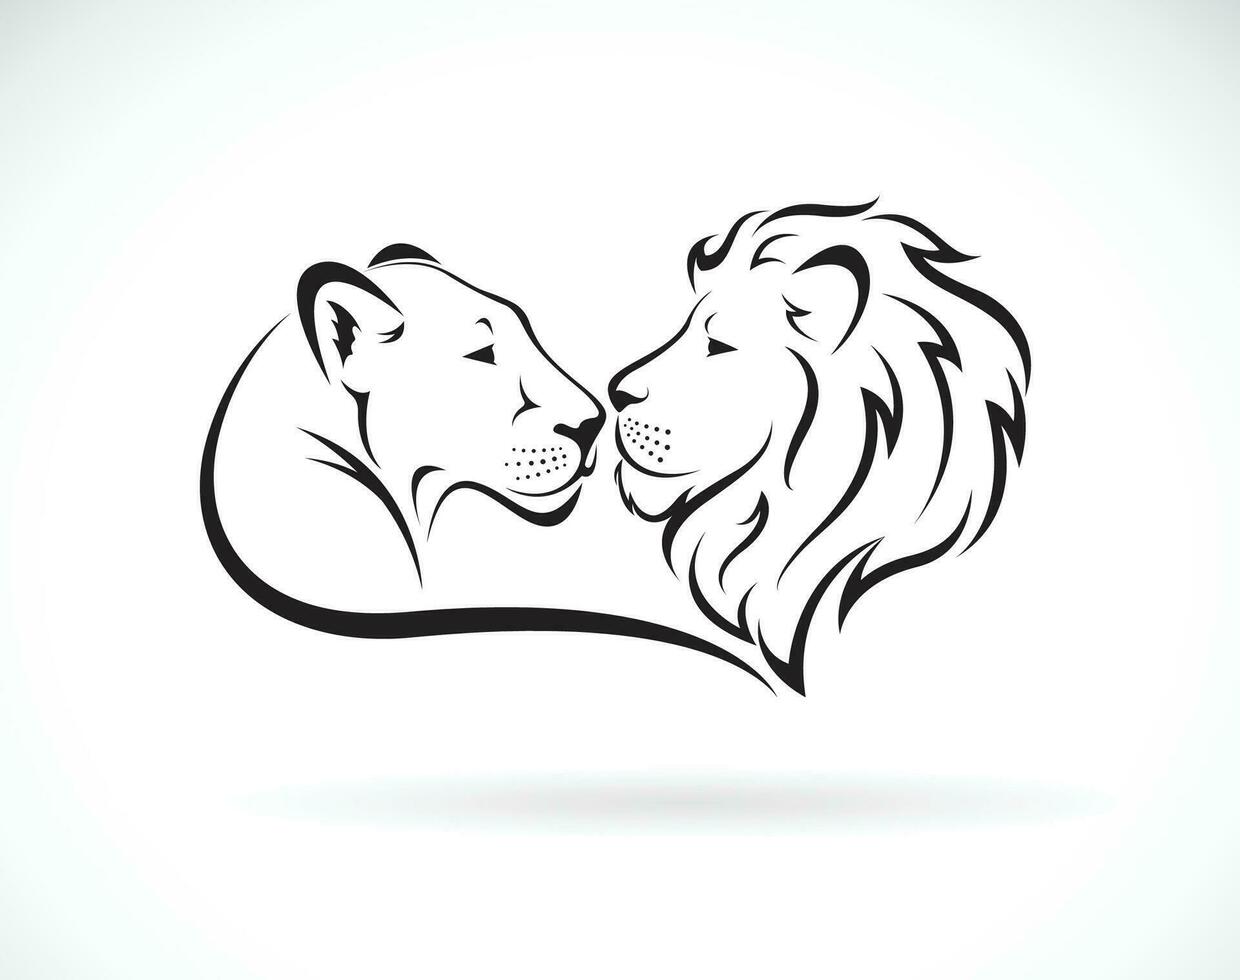 masculino leão e fêmea leão Projeto em branco fundo. selvagem animais. leão logotipo ou ícone. fácil editável em camadas vetor ilustração.